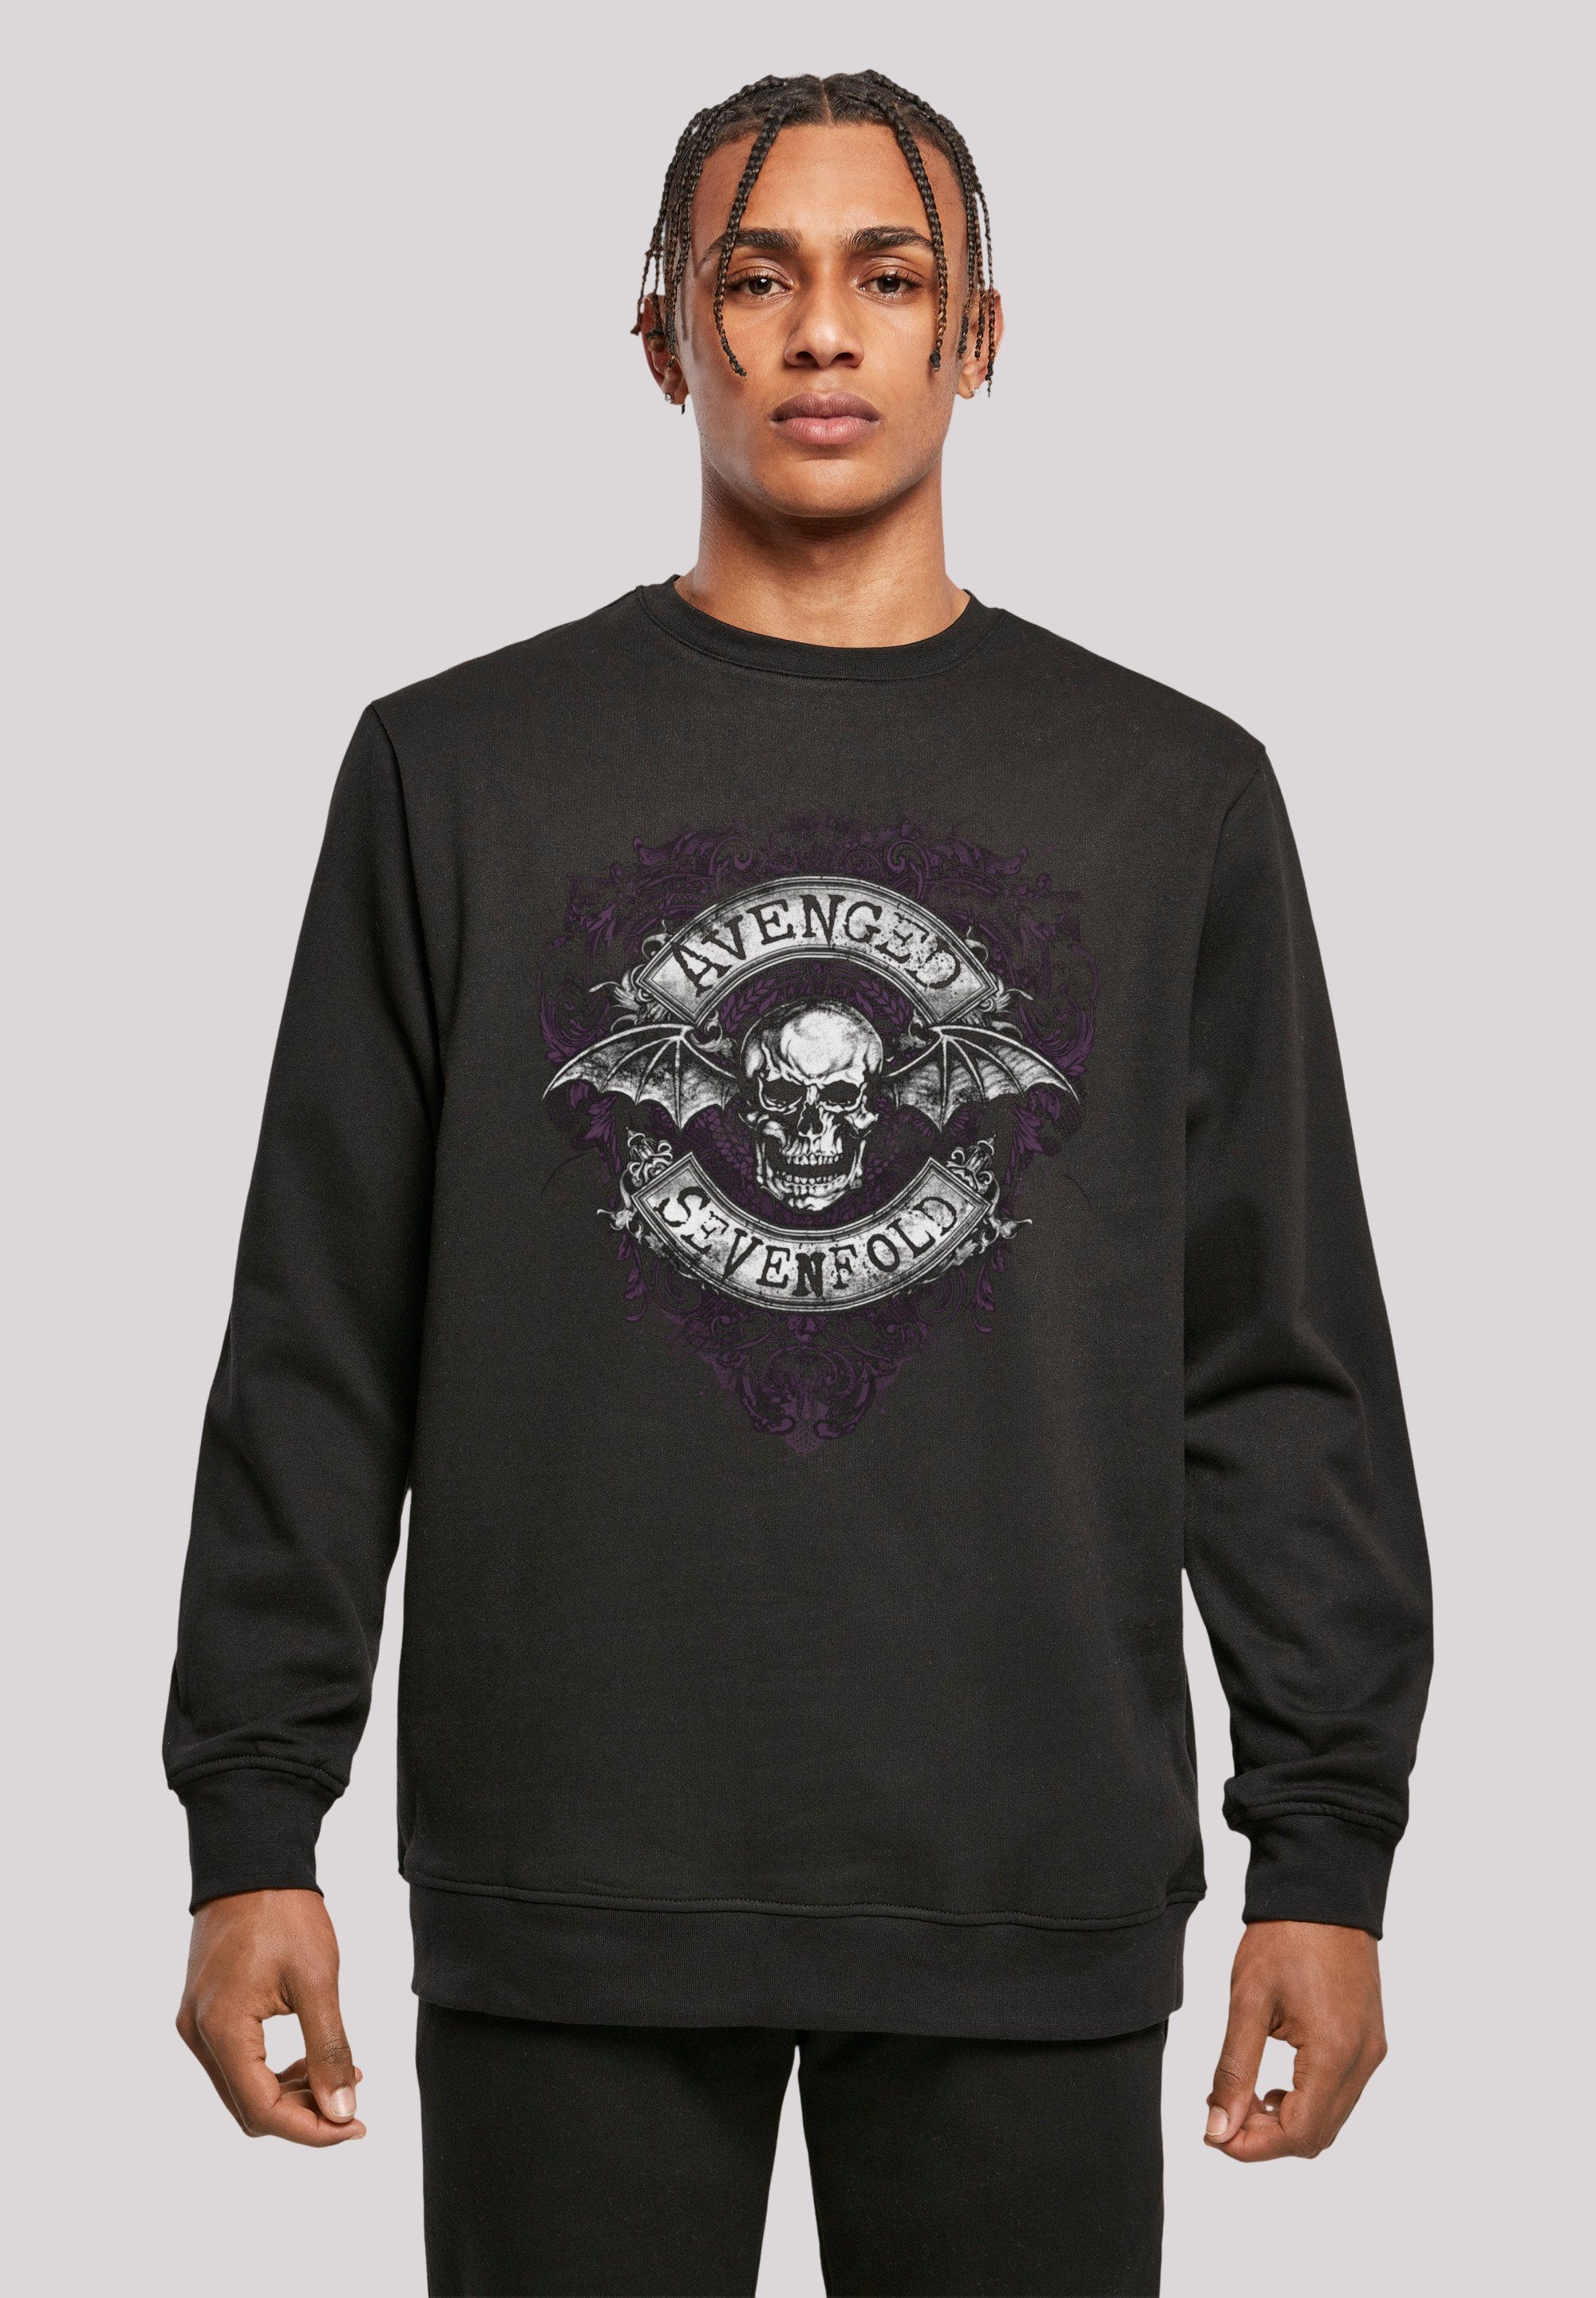 Bequemer Premium Sweatshirt Sevenfold Band, Rock-Musik, Schnitt Qualität, Bat F4NT4STIC entspanntem Metal Flourish mit Tragekomfort Band Avenged Rock